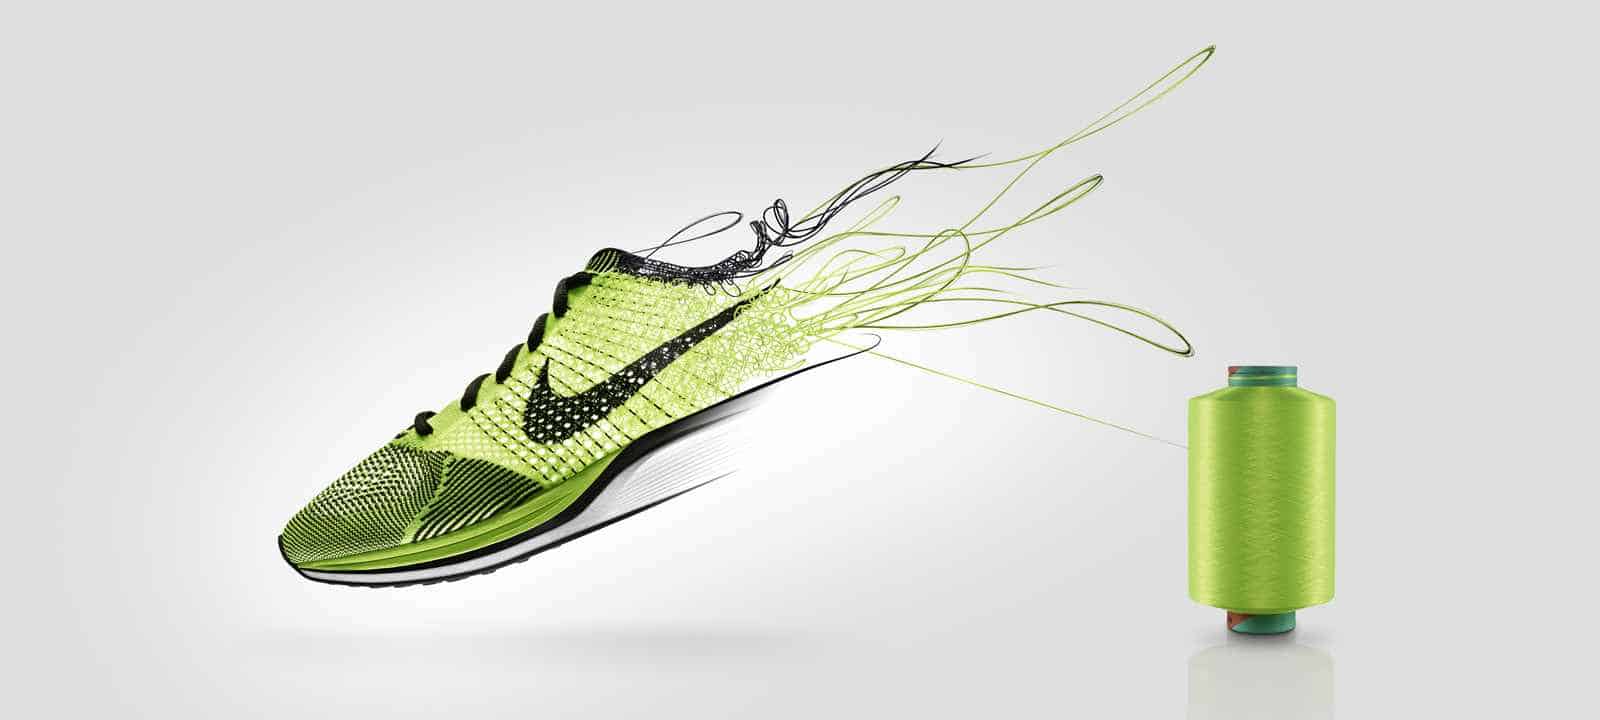 Áp dụng công nghệ dệt Flyknit vào giày thể thao của Nike đã tạo nên một bước cải tiến vượt bậc